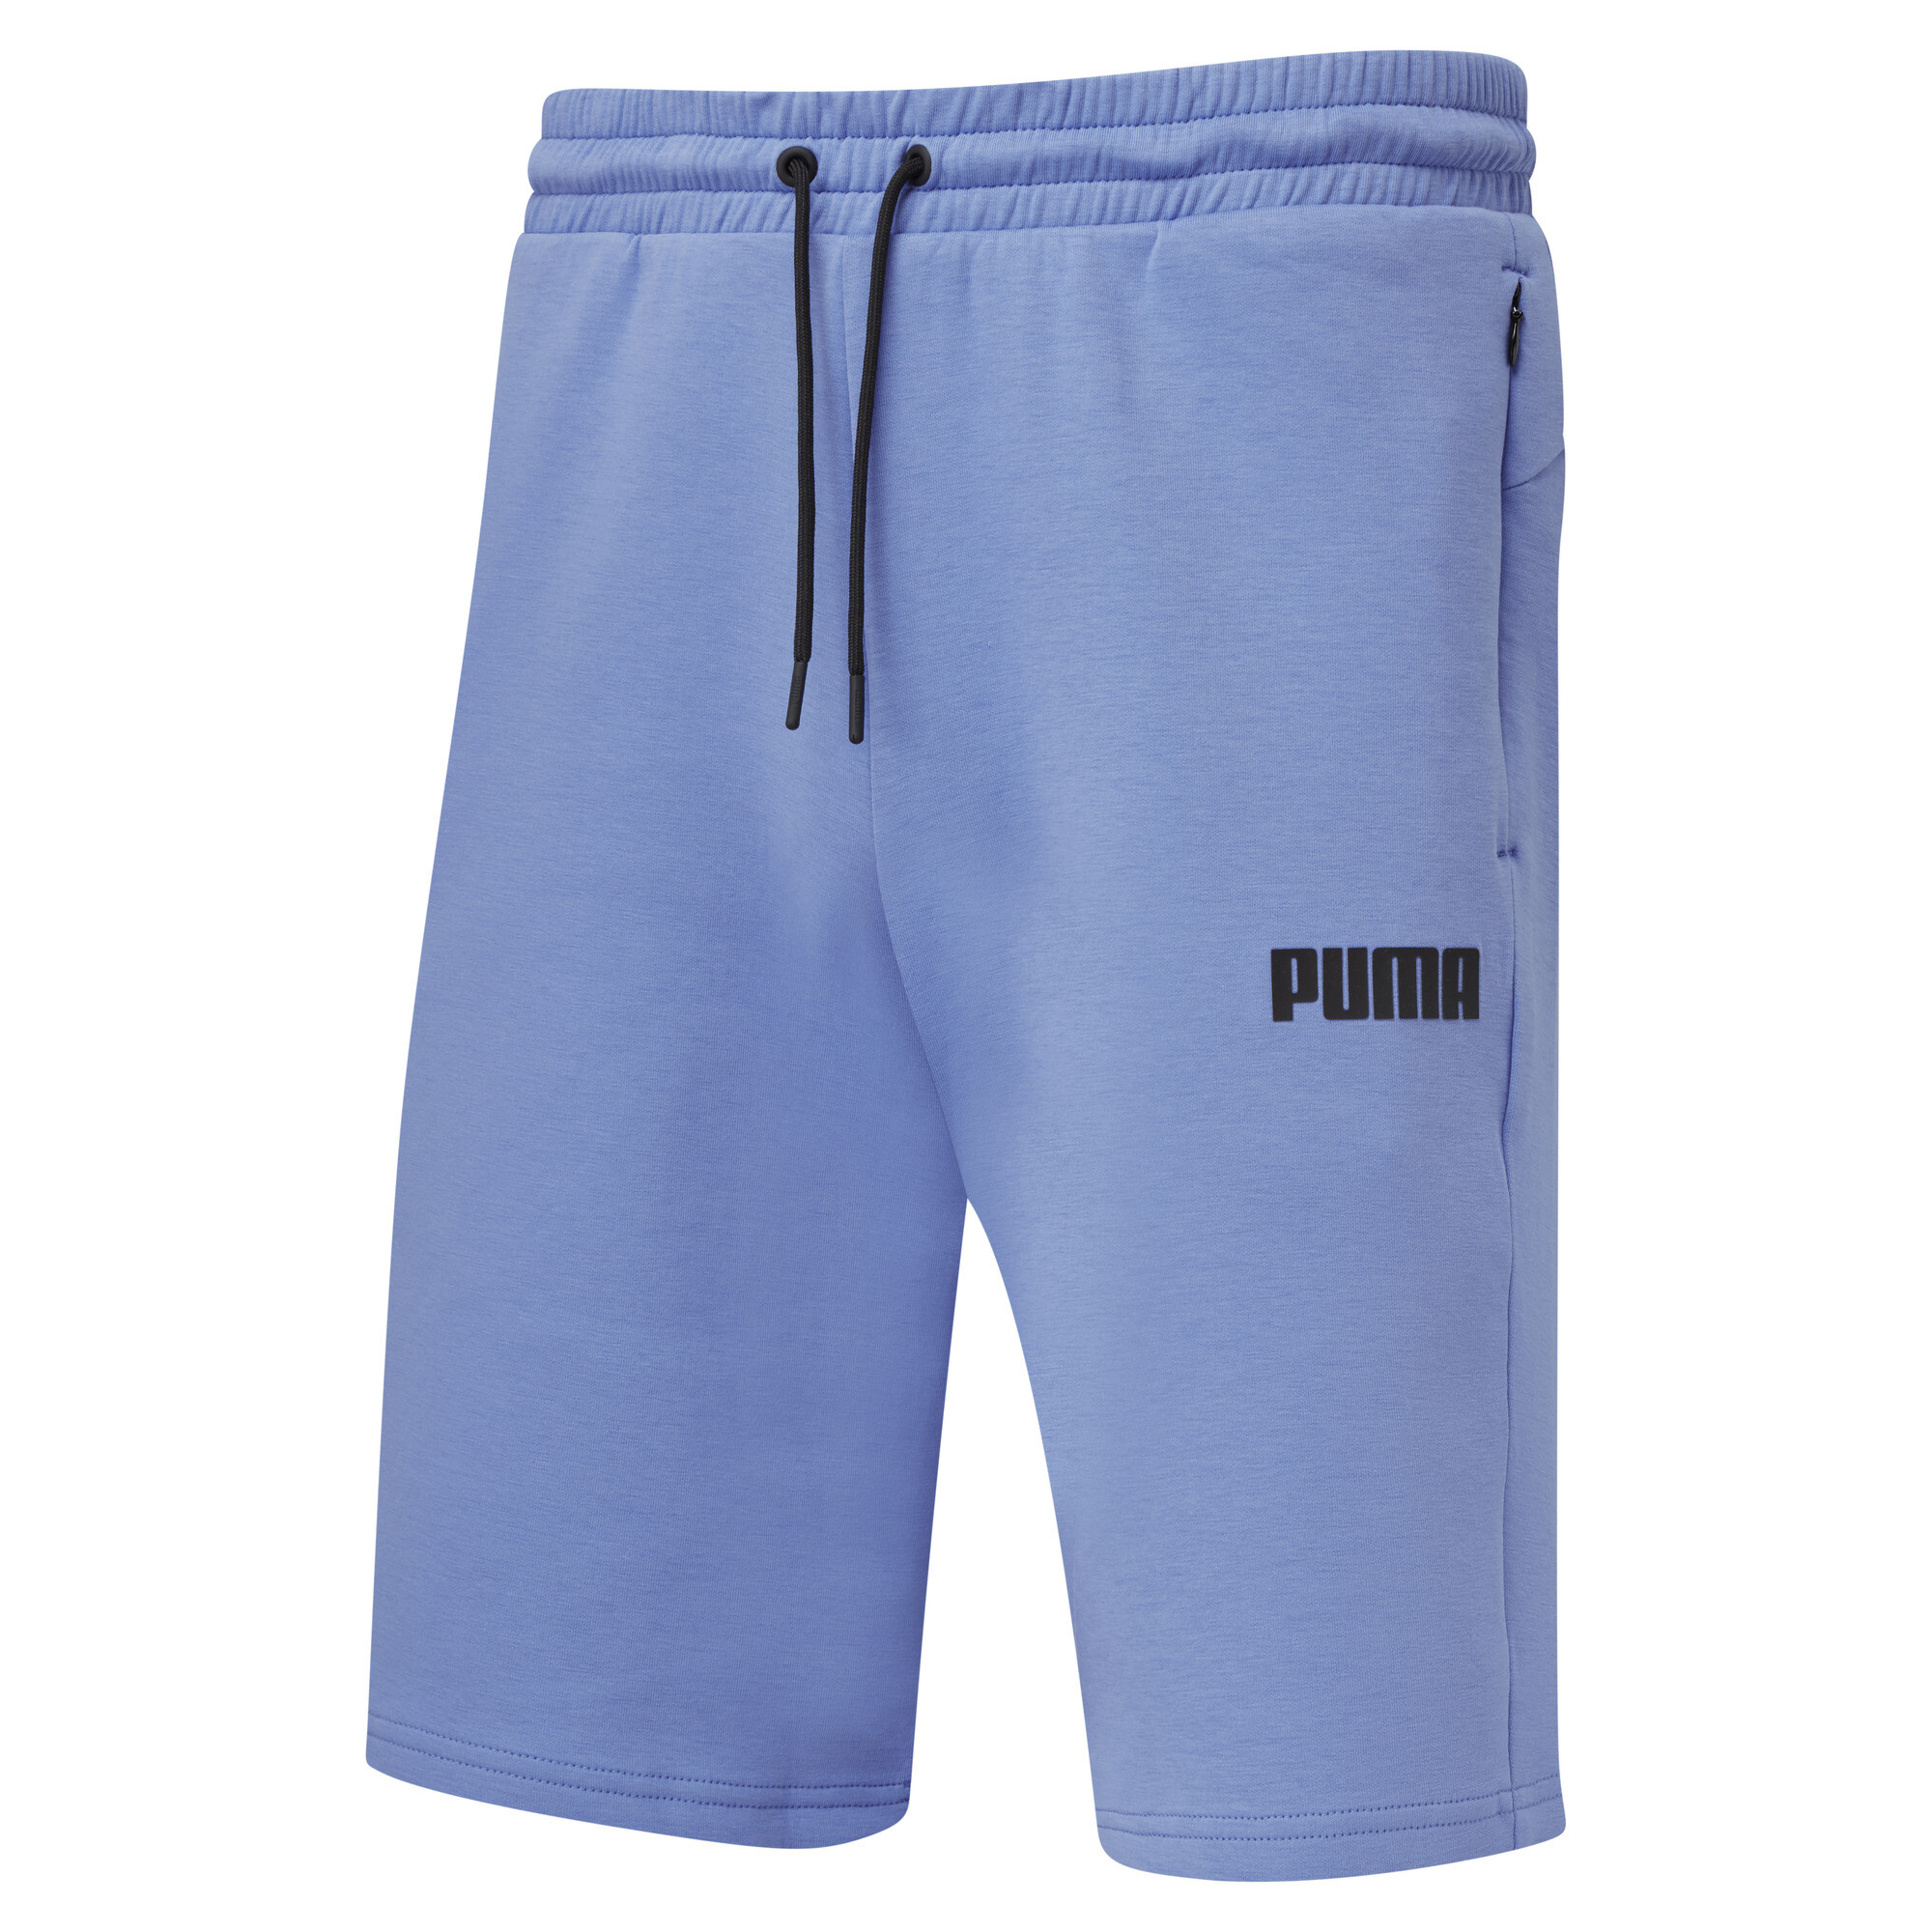 PUMA SPACER Shorts Regular Fit Mens | eBay